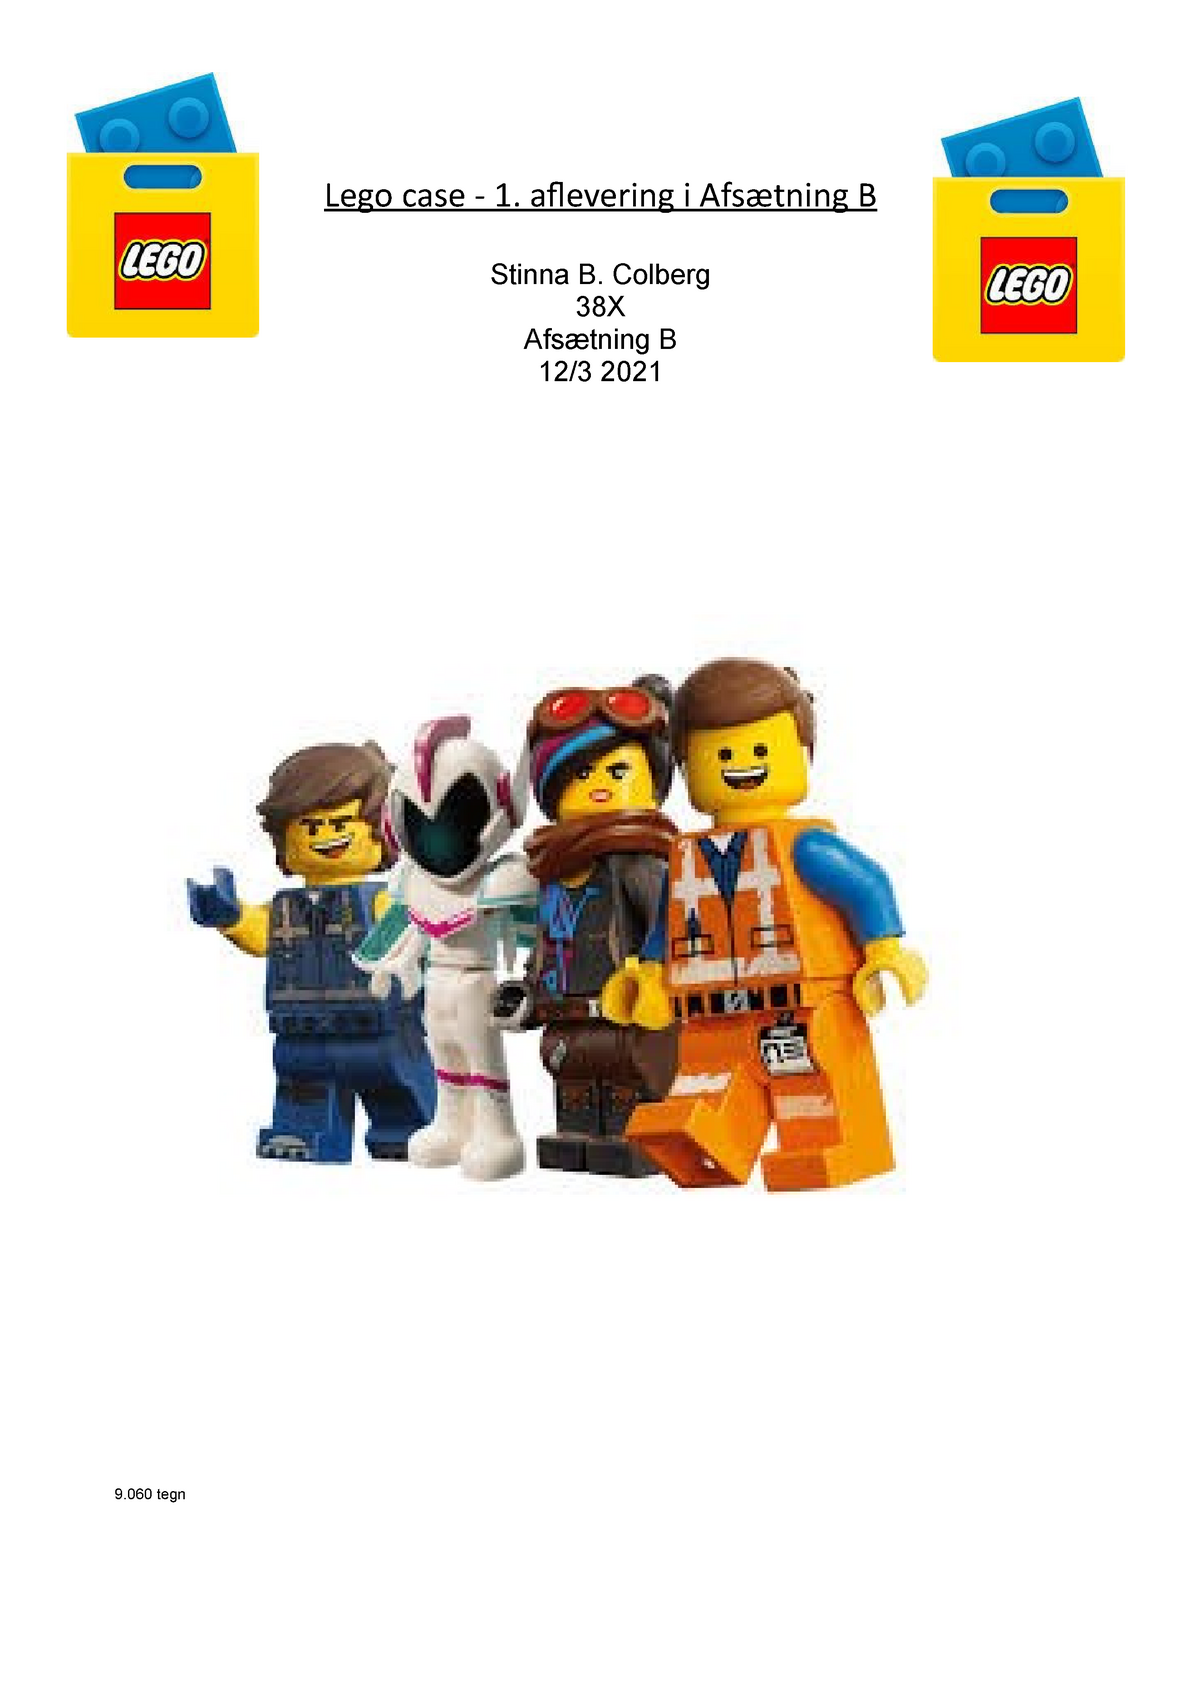 LEGO 1 afsætning - [Skriv her] Lego case aflevering i Afsætning B B. Colberg 38X - Studocu